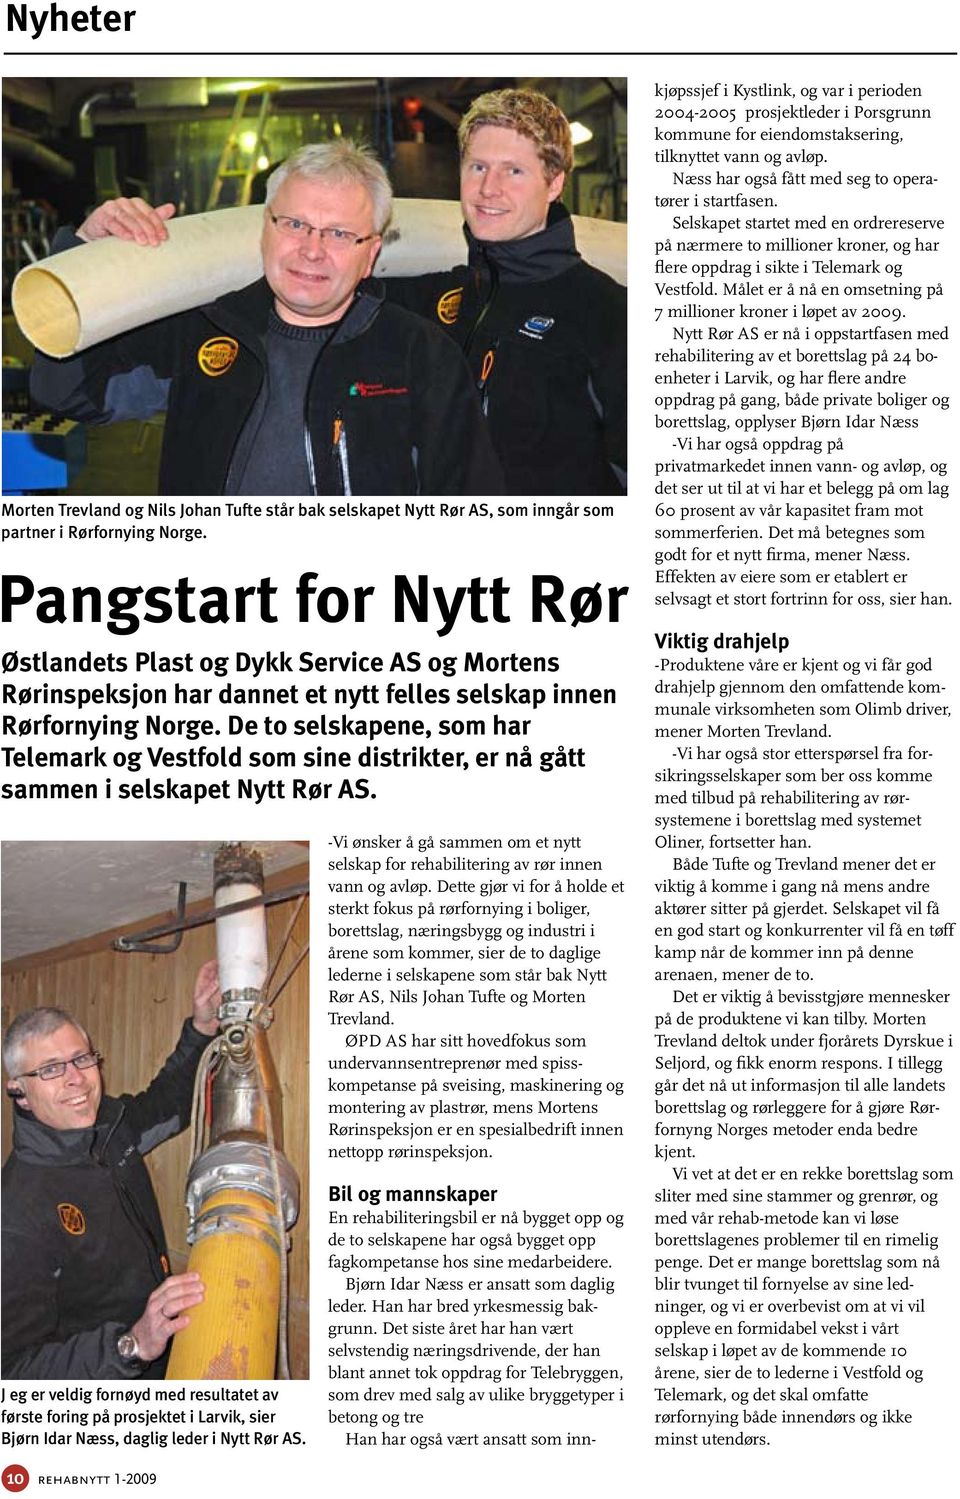 De to selskapene, som har Telemark og Vestfold som sine distrikter, er nå gått sammen i selskapet Nytt Rør AS.